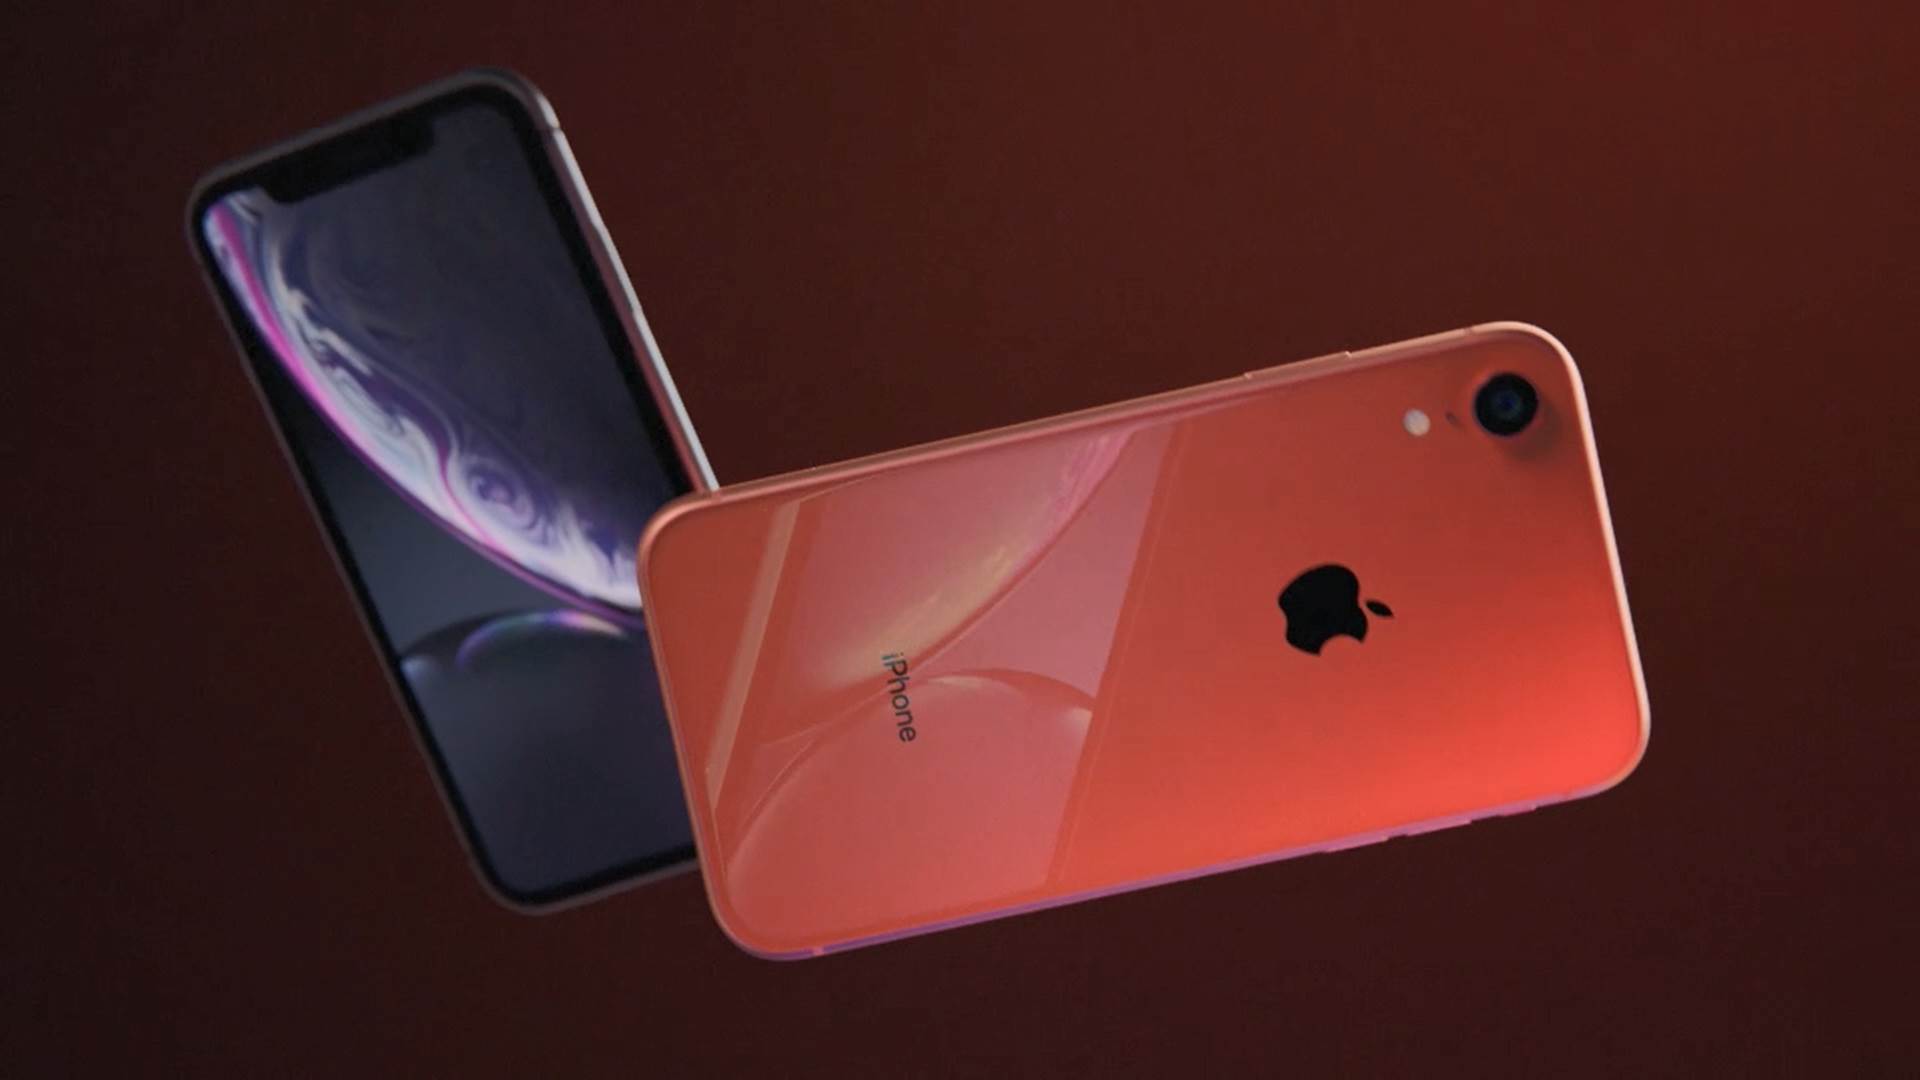  Apple izmešta iPhone proizvodnju iz Kine 